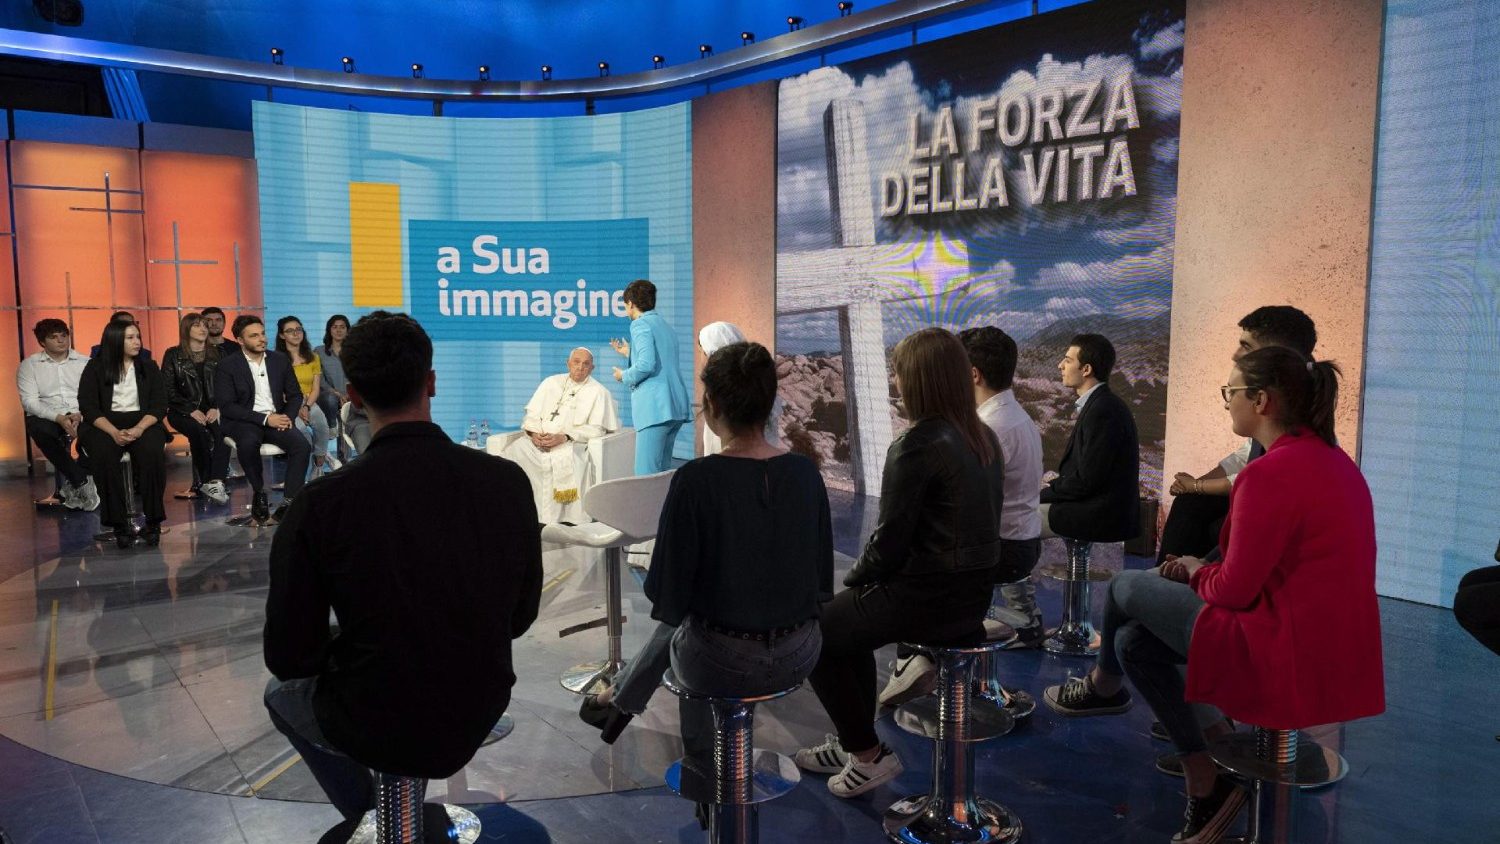 ĐTC thảo luận về đức tin, các vấn đề của thế giới trên đài truyền hình Ý